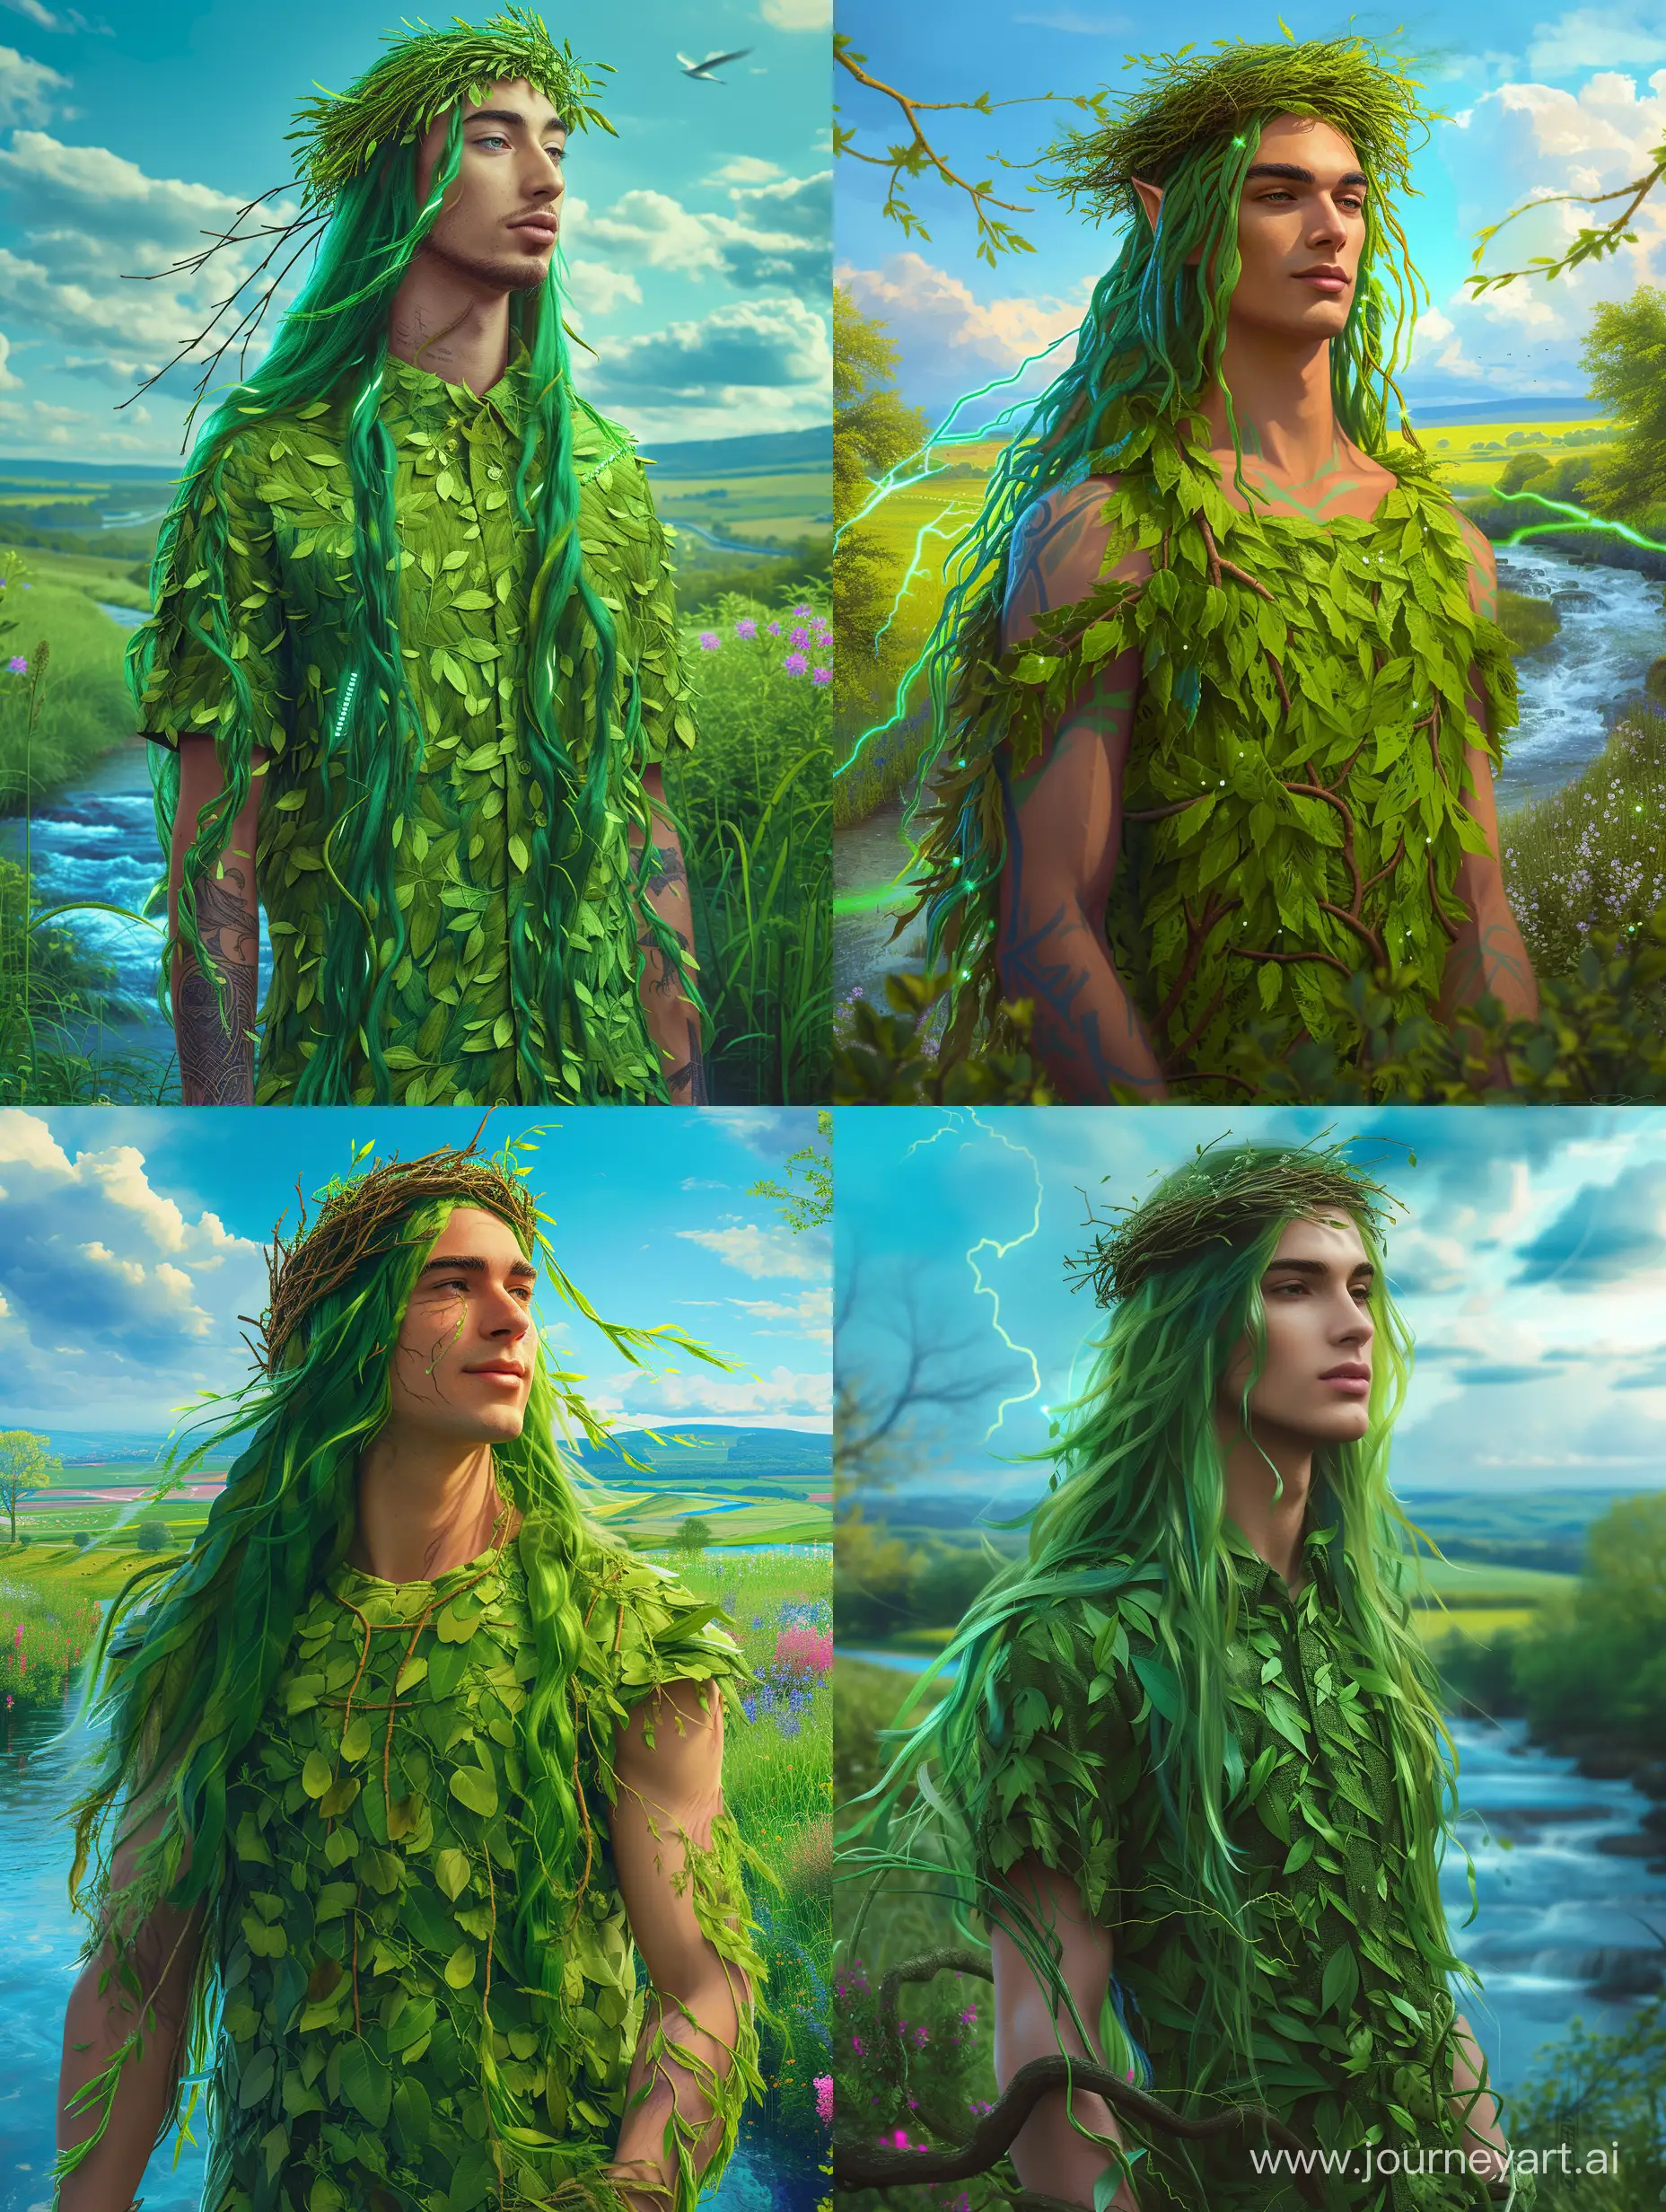 Король-весна, невероятно красивый мужчина в полный рост, с зелеными длинными волосами, на голове венок из вербы, в рубашке из зеленых листьев в весеннем саду, красивый пейзаж на фоне, синее небо, ручей, неоновые переливы, высокое разрешение, эстетично, красиво, яркое освещение, фотореализм